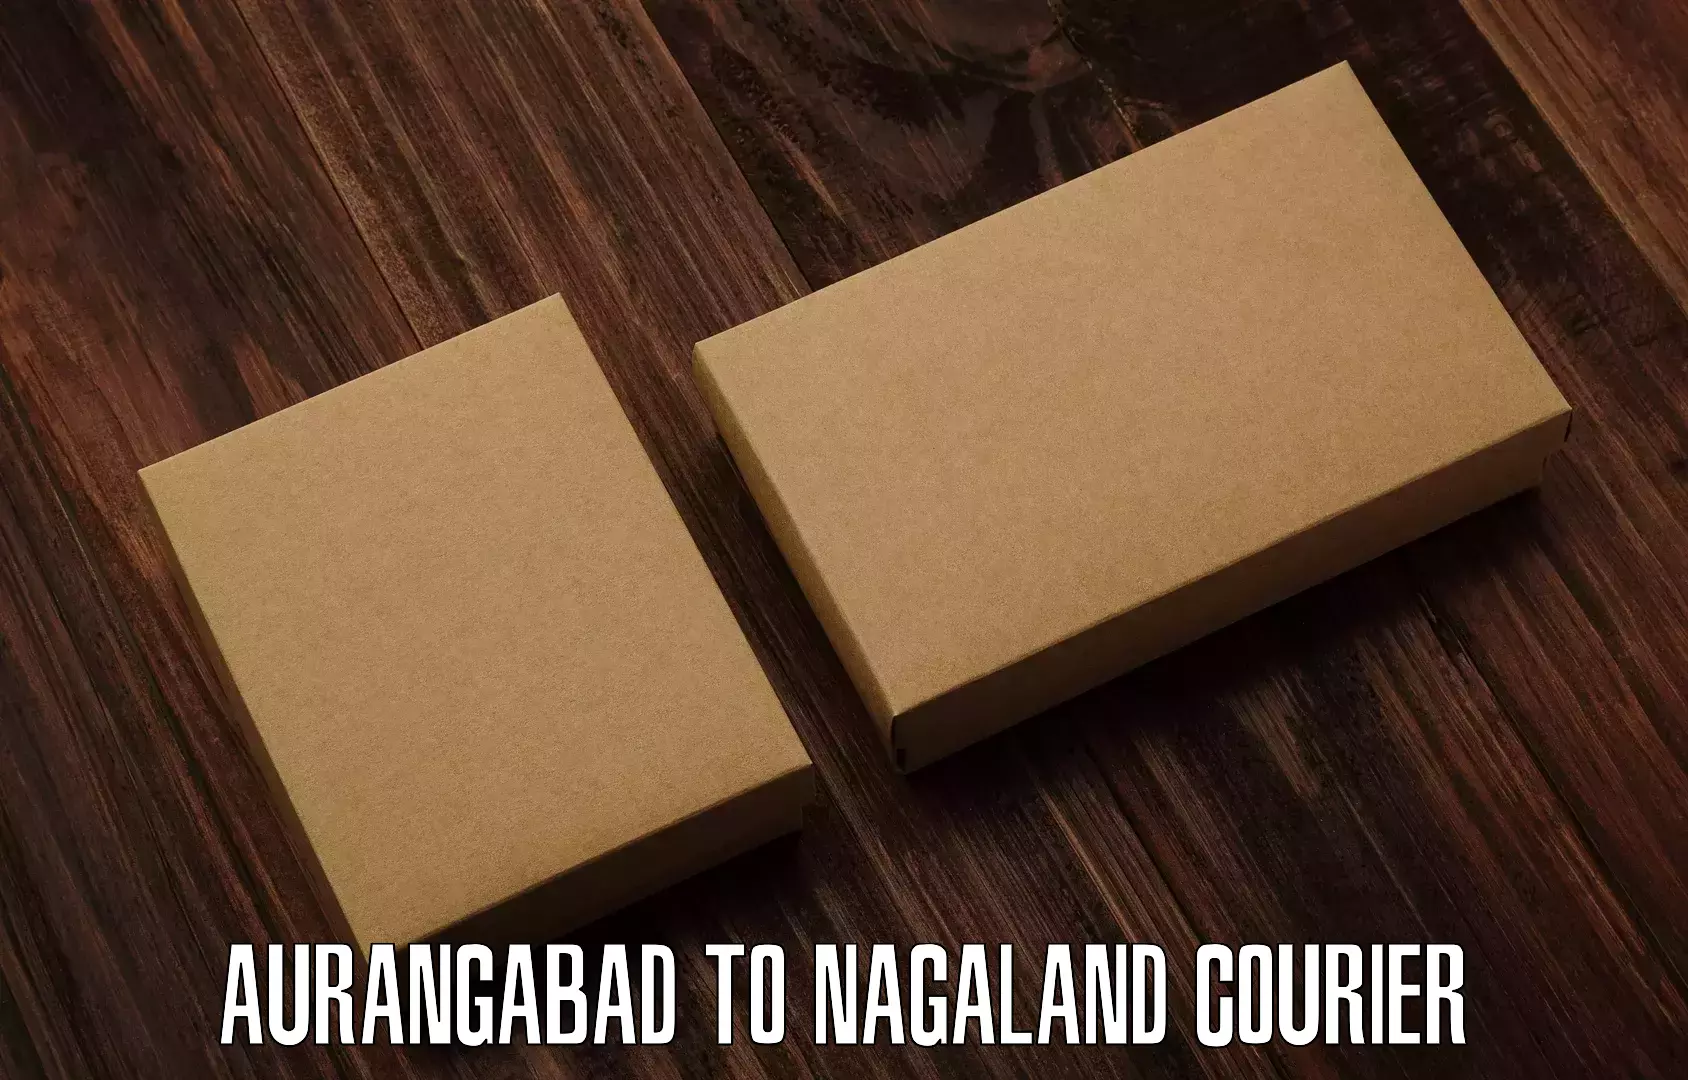 Regular parcel service Aurangabad to Nagaland